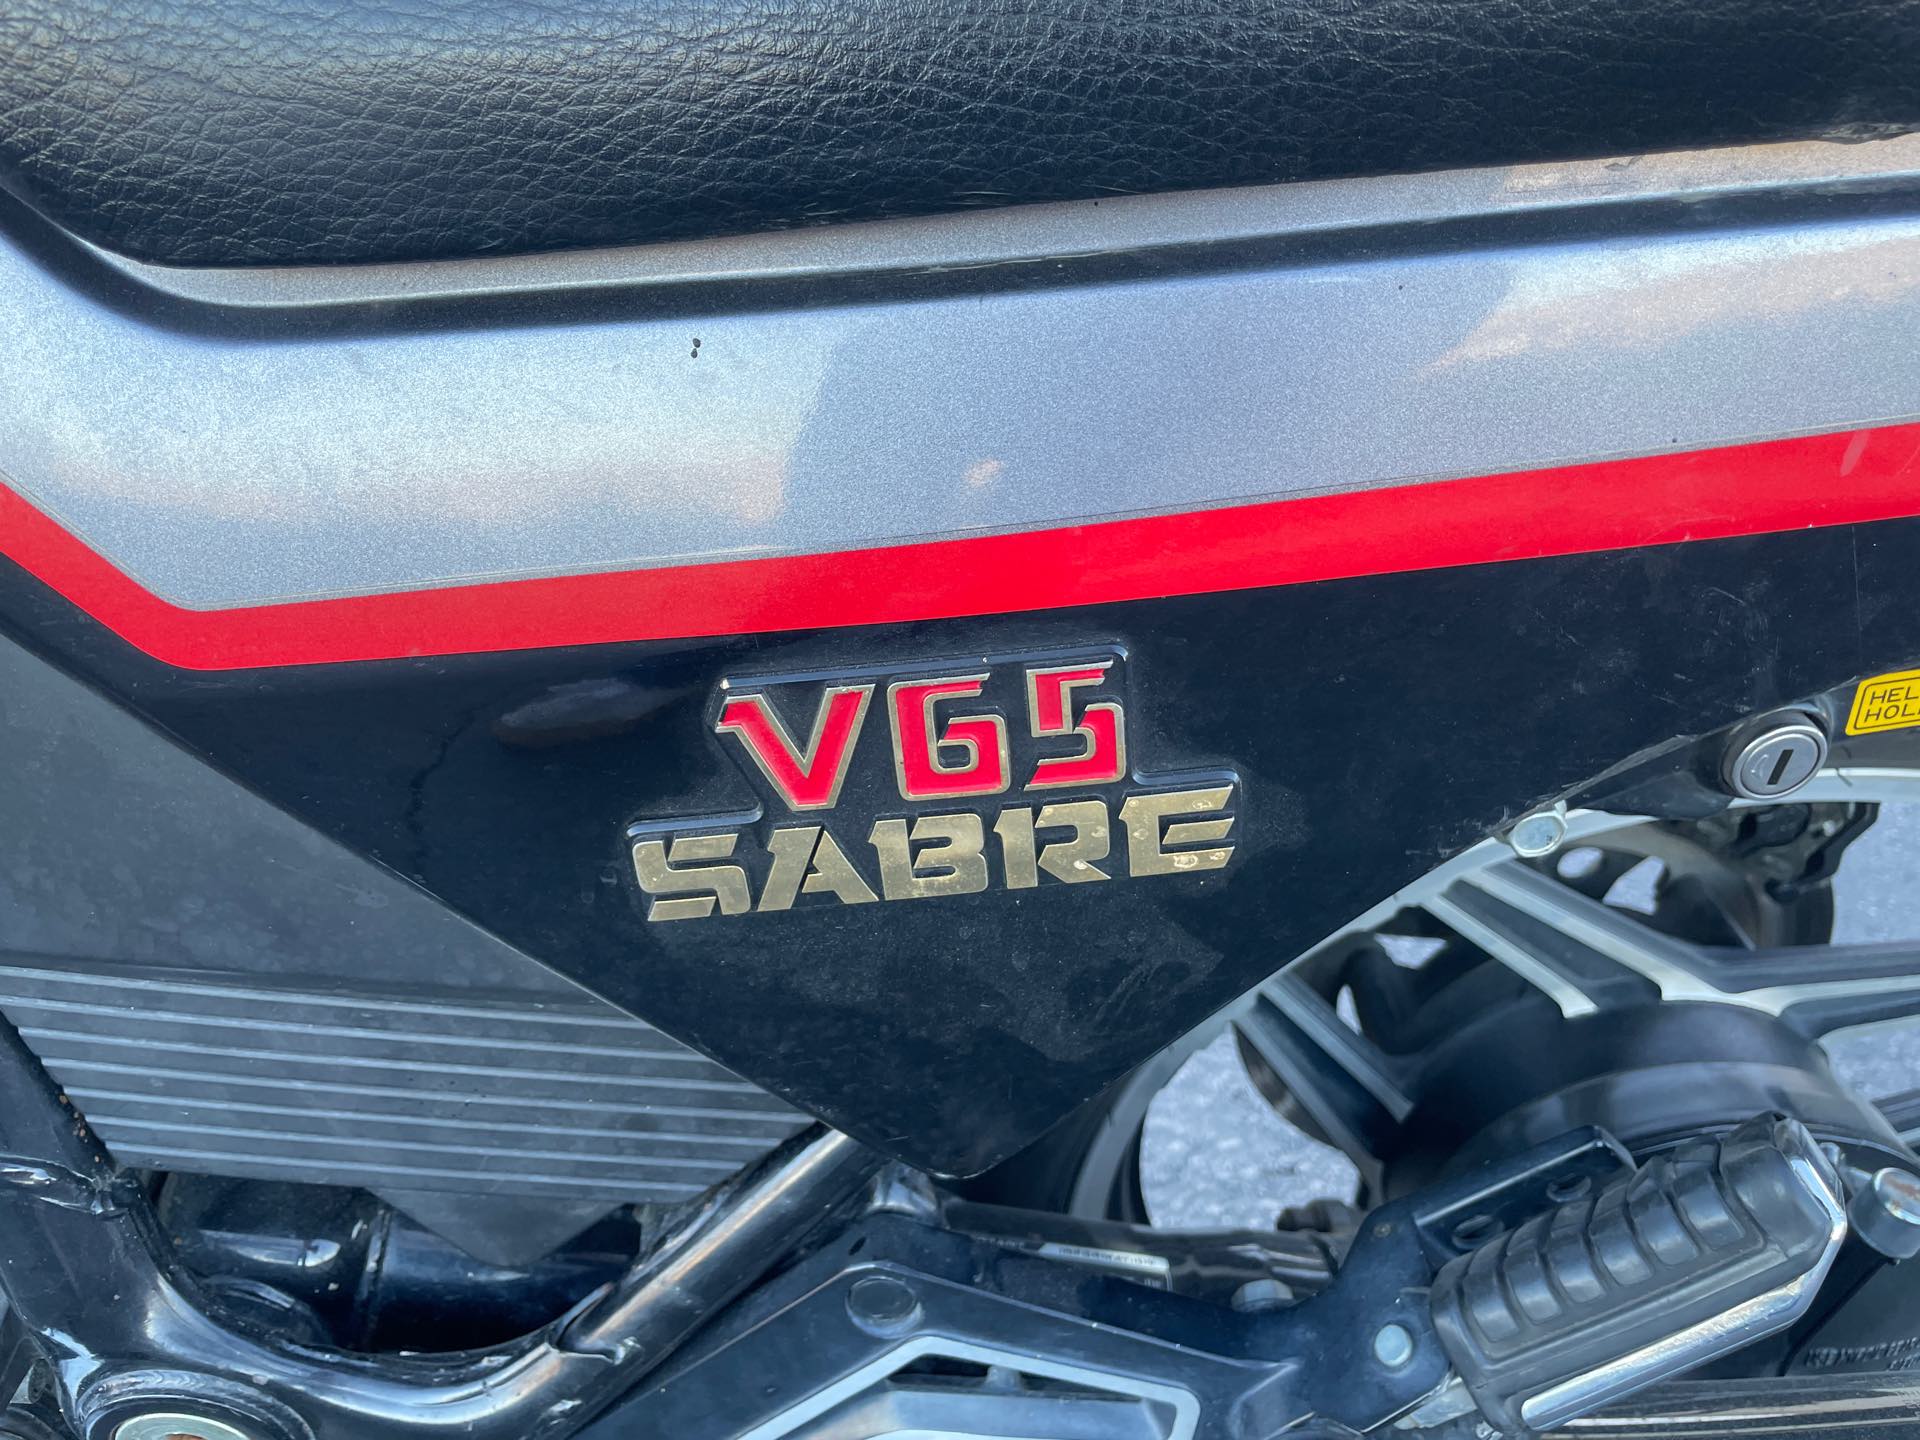 1985 Honda V65 Sabre at Mount Rushmore Motorsports